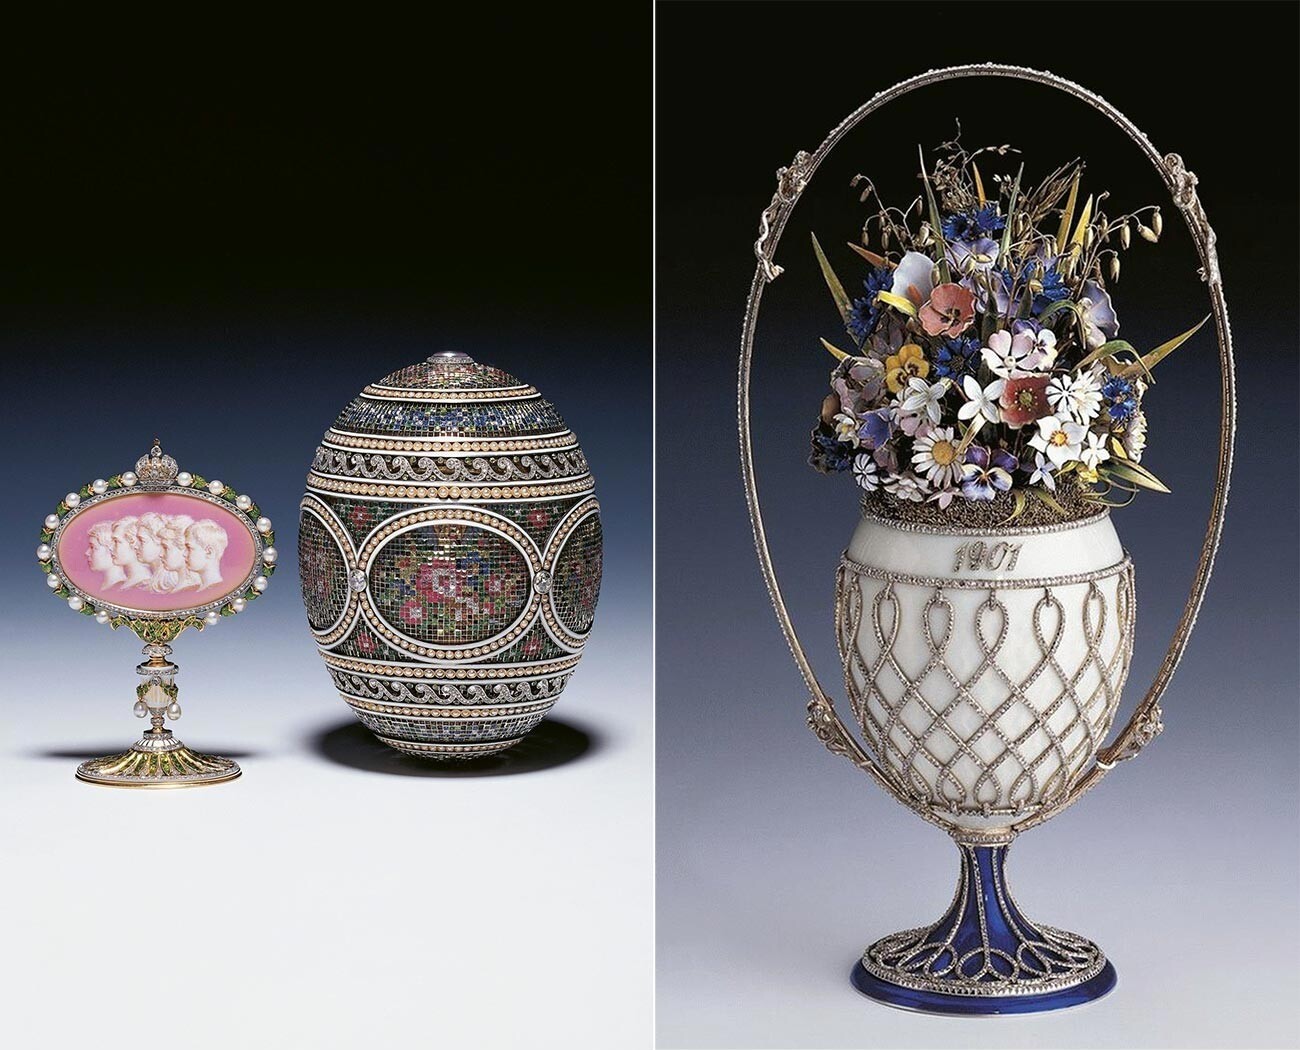 Los huevos de Pascua Fabergé Mosaico y Cesta de flores silvestres vendidos en los años 30 a la monarquía británica

